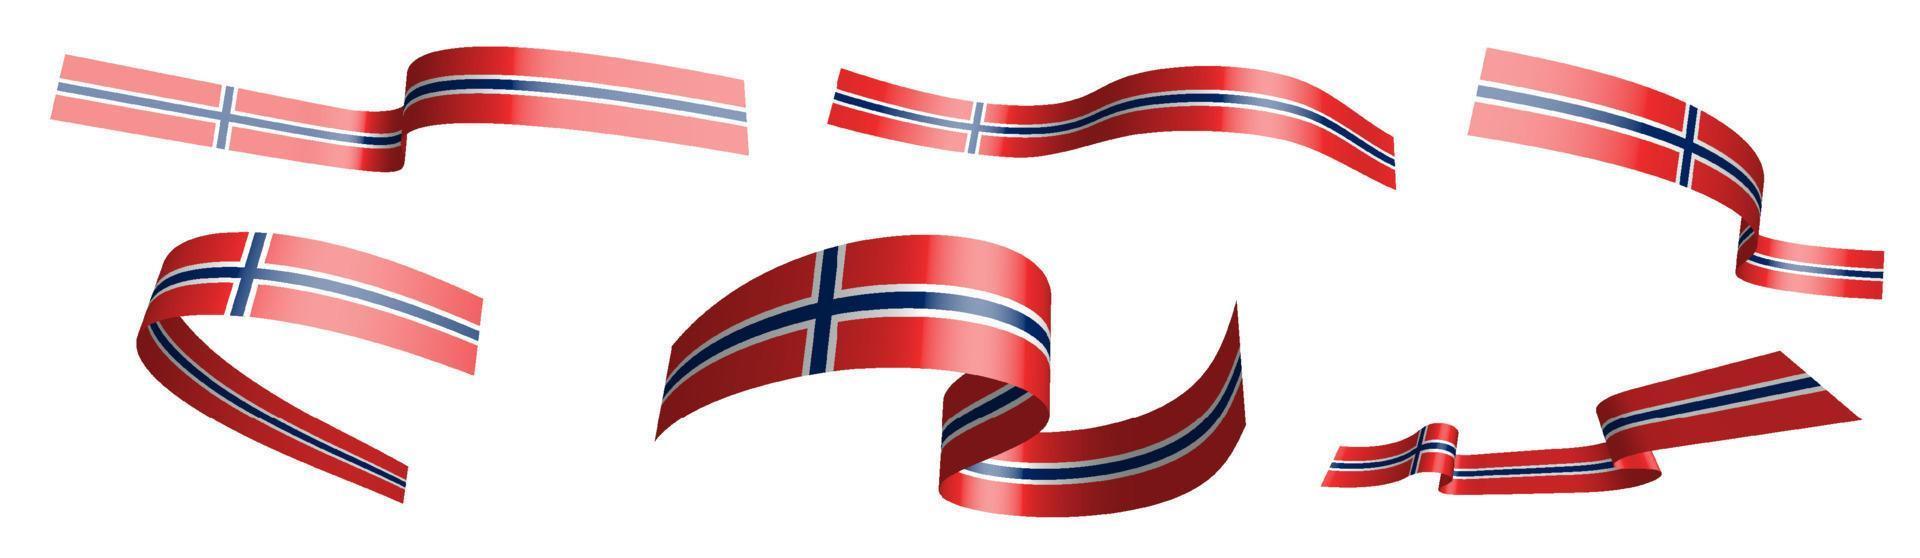 conjunto de cintas de vacaciones. bandera de noruega ondeando en el viento. separación en capas superior e inferior. elemento de diseño vector sobre fondo blanco